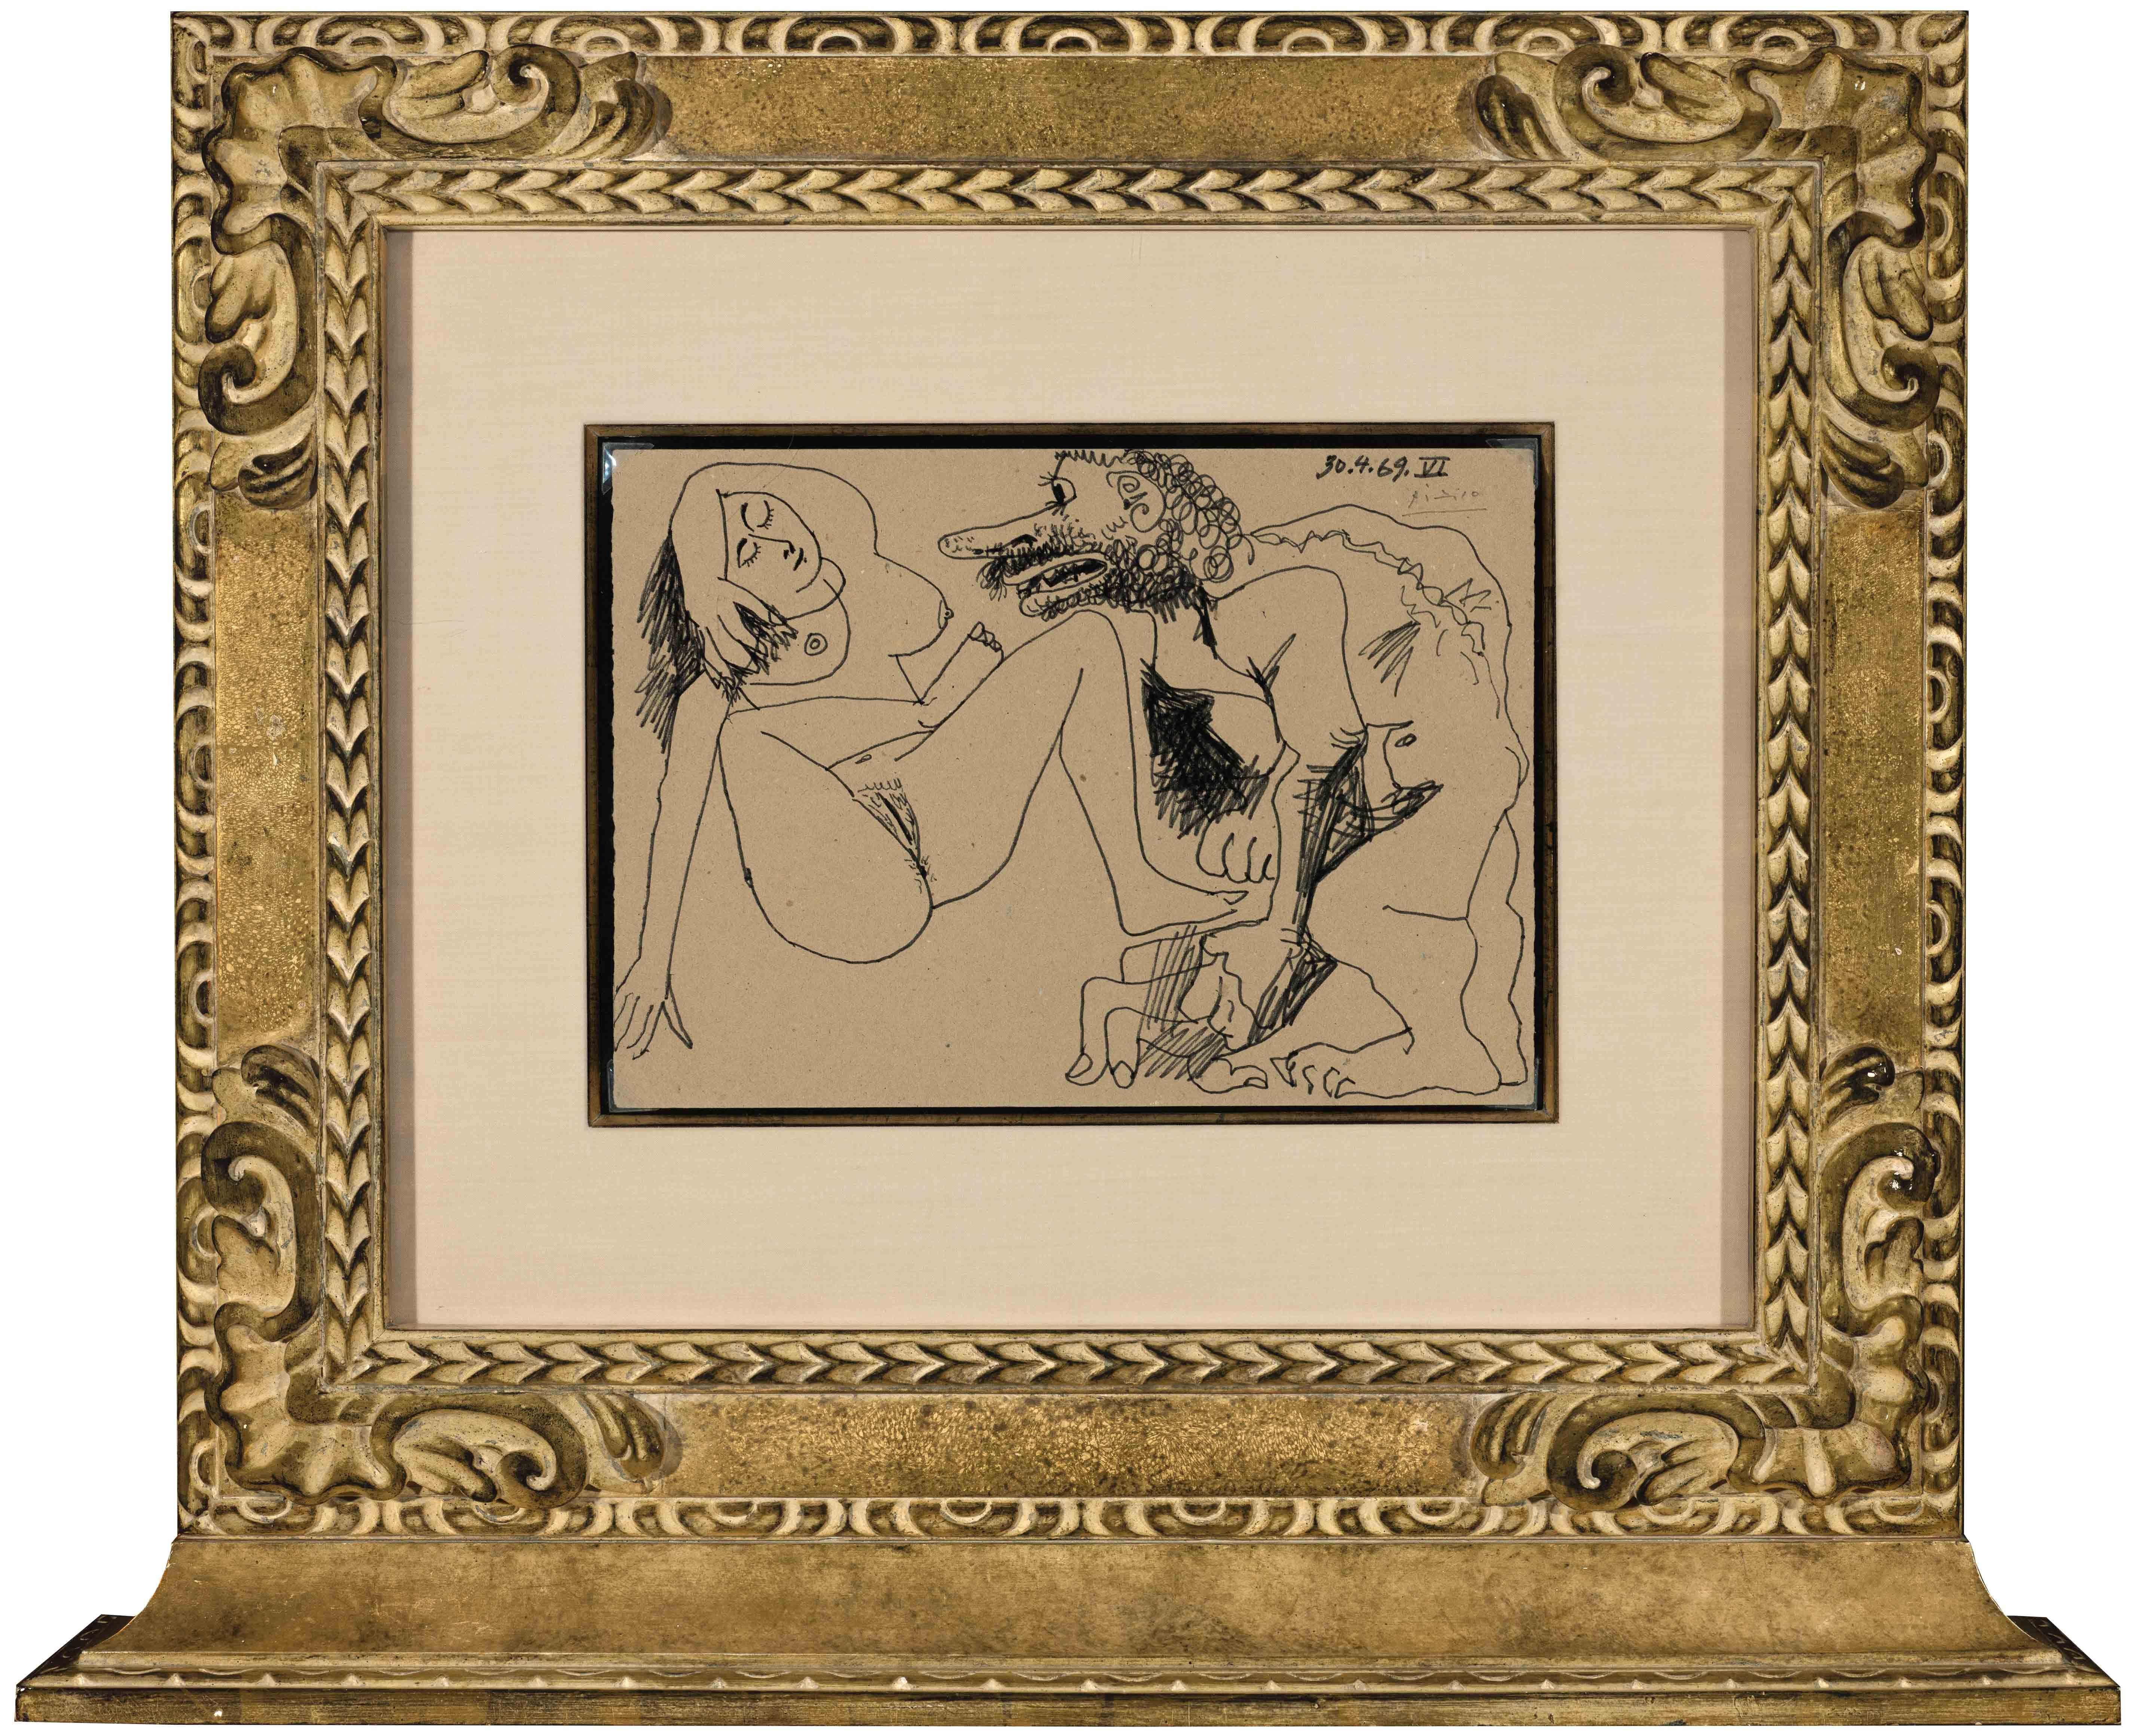 Homme et femme nus/Tete de Homme, 1969 (double-sided) - Art by Pablo Picasso